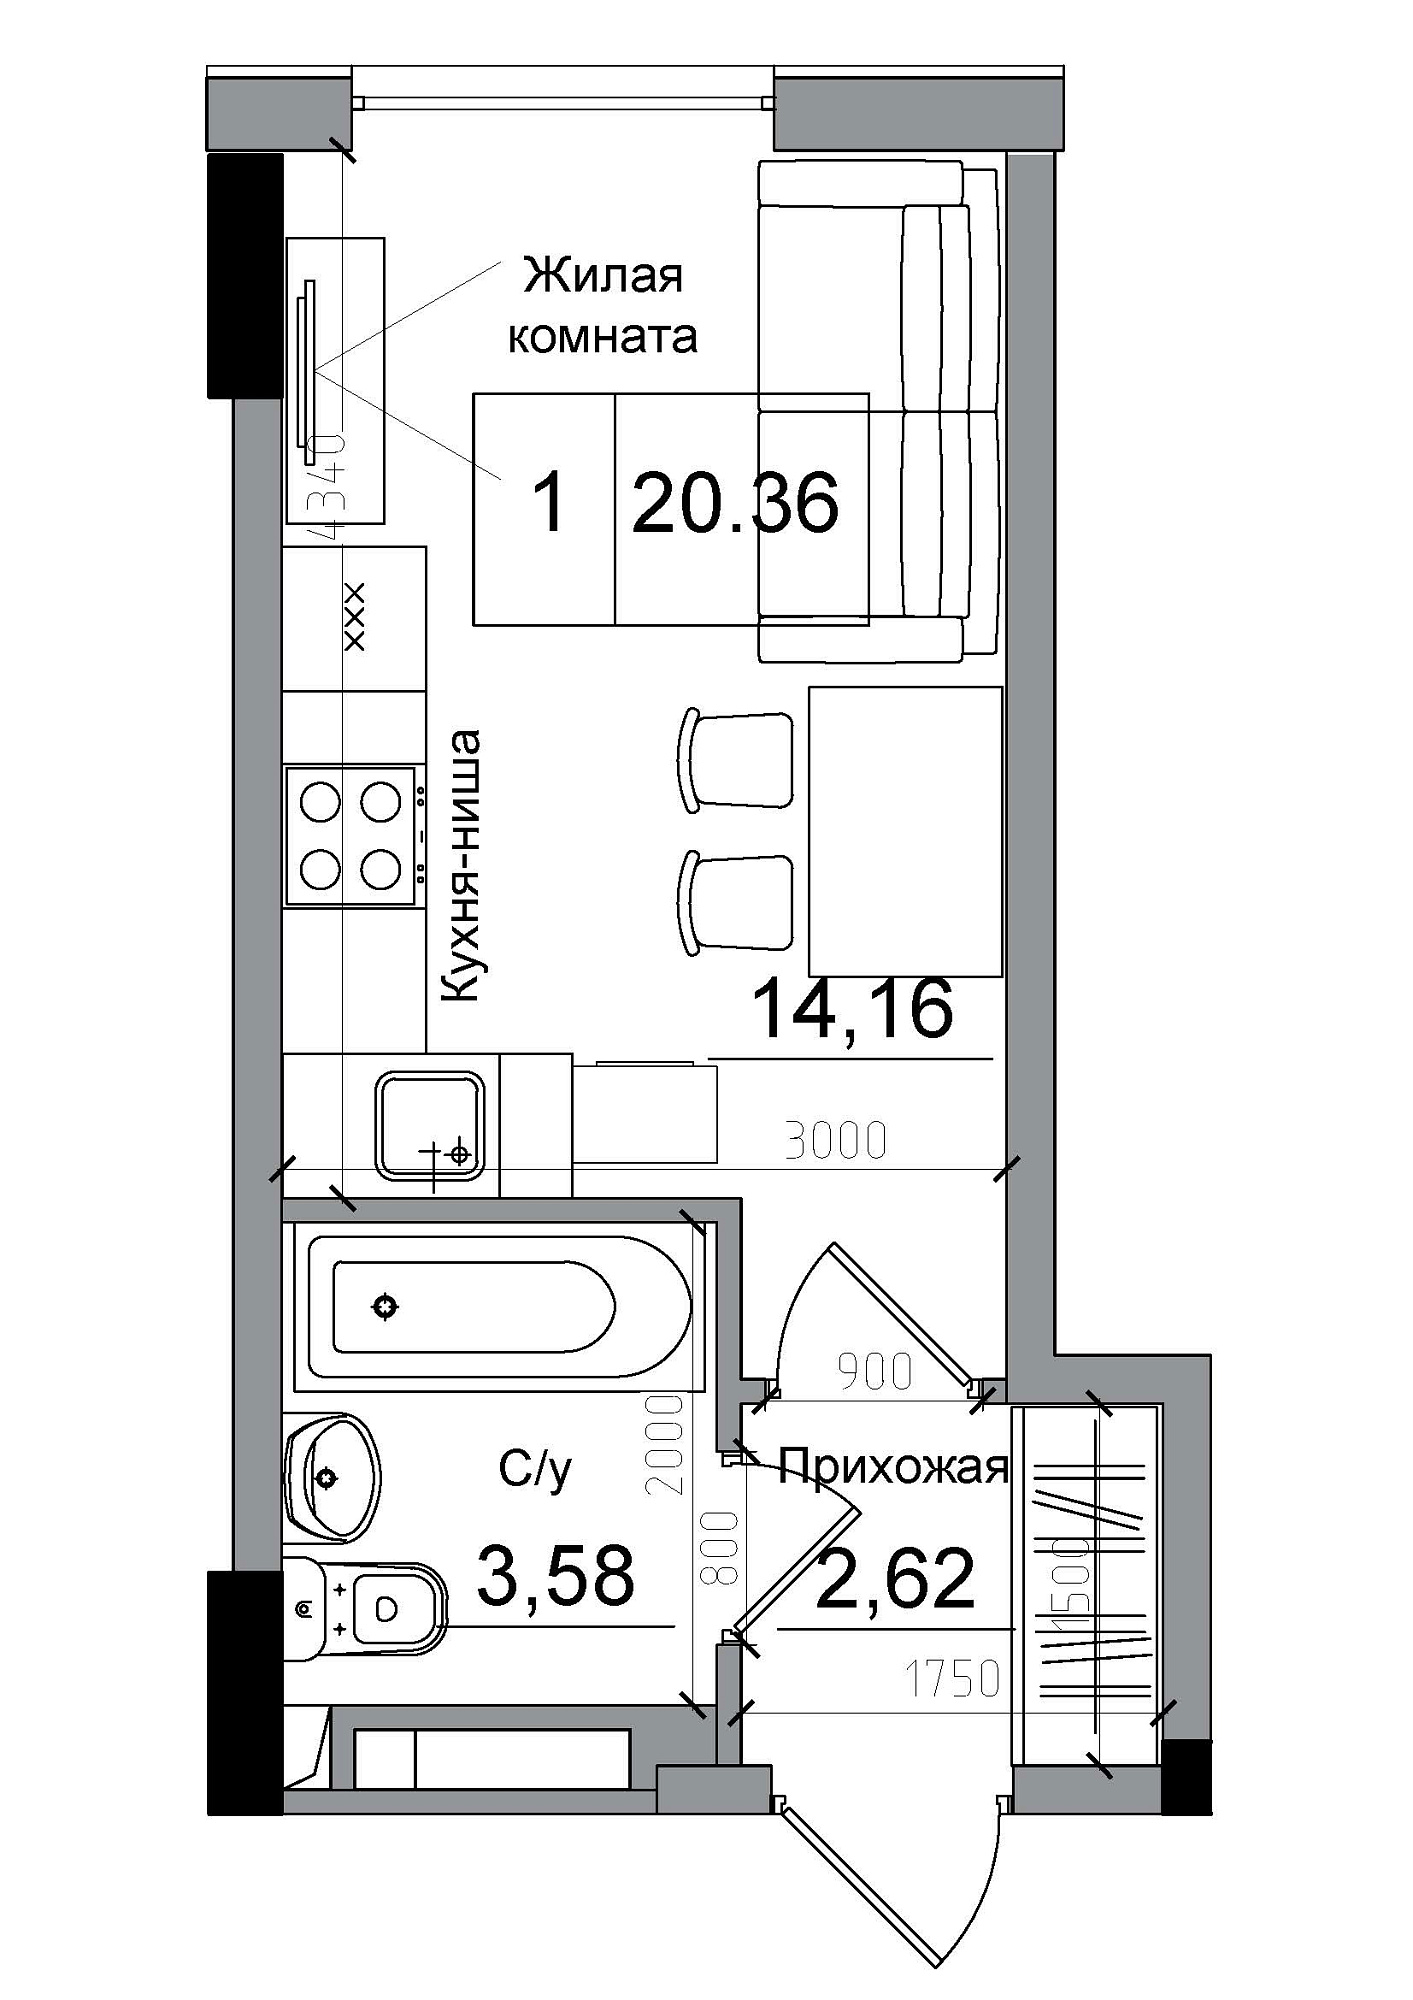 Планировка Smart-квартира площей 20.36м2, AB-04-07/0007а.